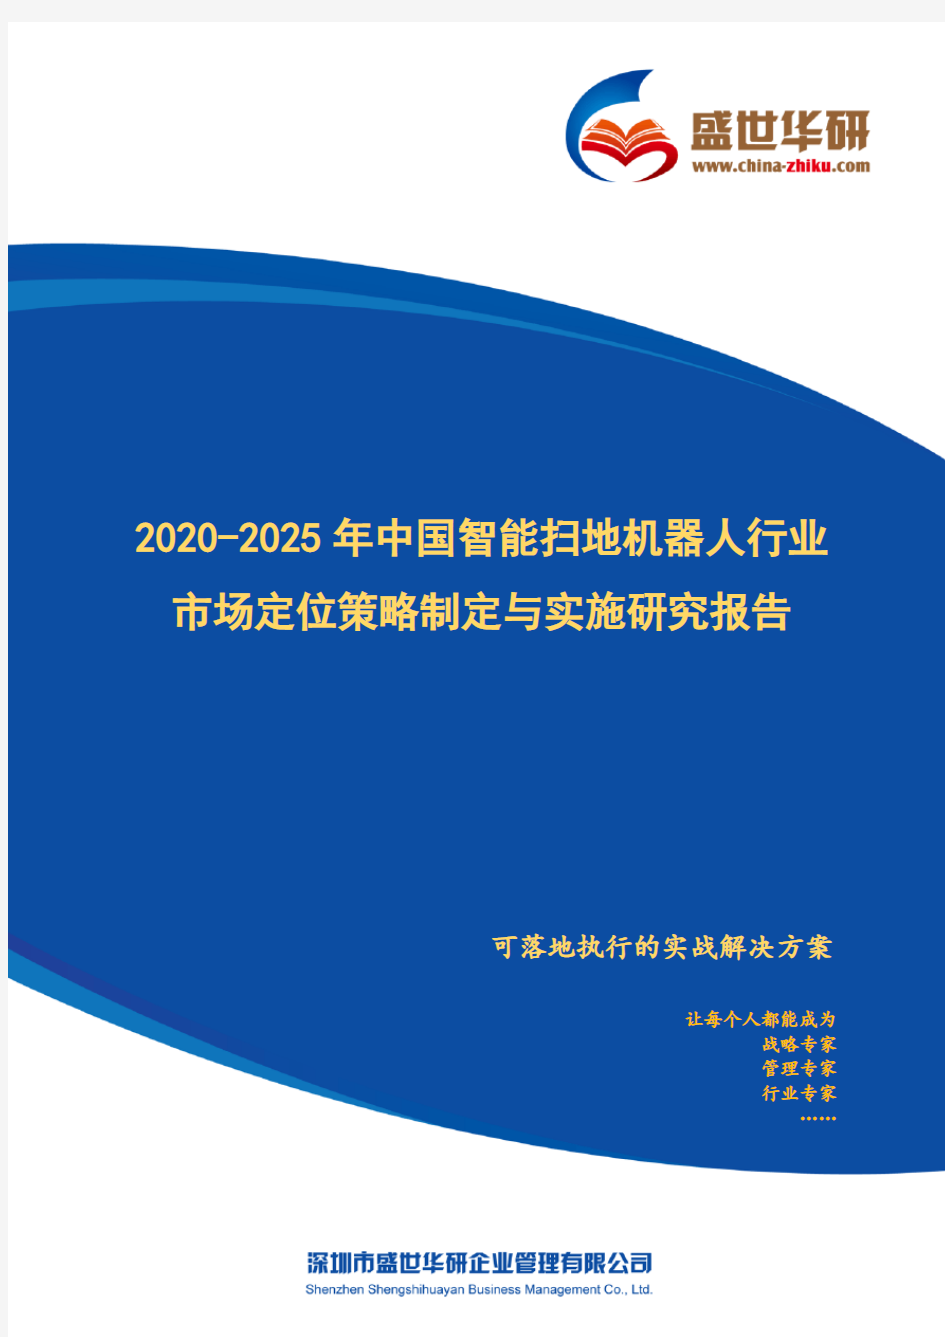 【完整版】2020-2025年中国智能扫地机器人行业市场定位策略制定与实施研究报告